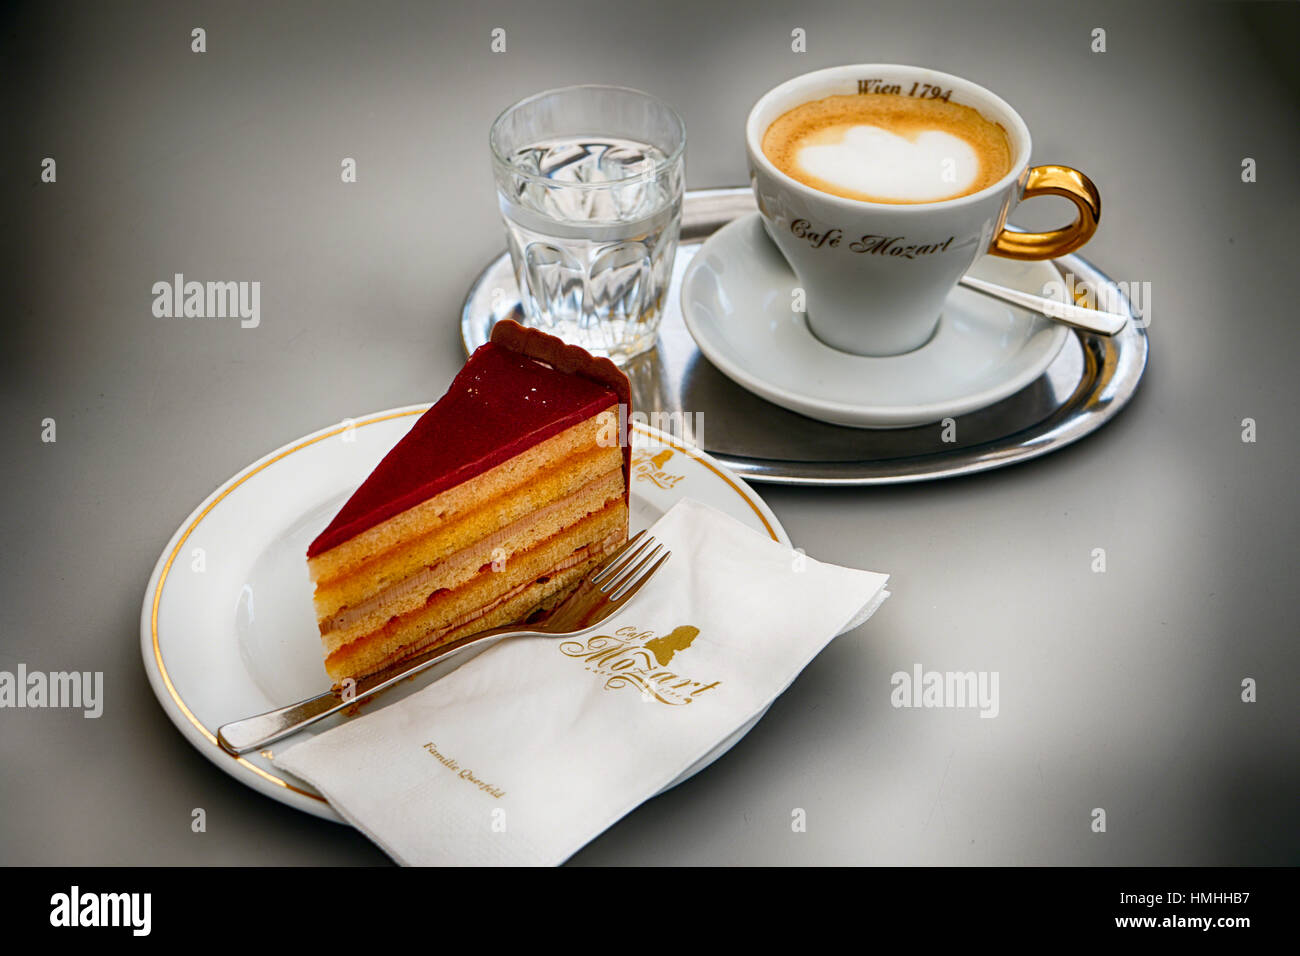 Nahaufnahme einer Landtmann feine Torte mit einem Espresso Kaffee und Mineralwasser, Cafe Mozart, Wien, Österreich Stockfoto